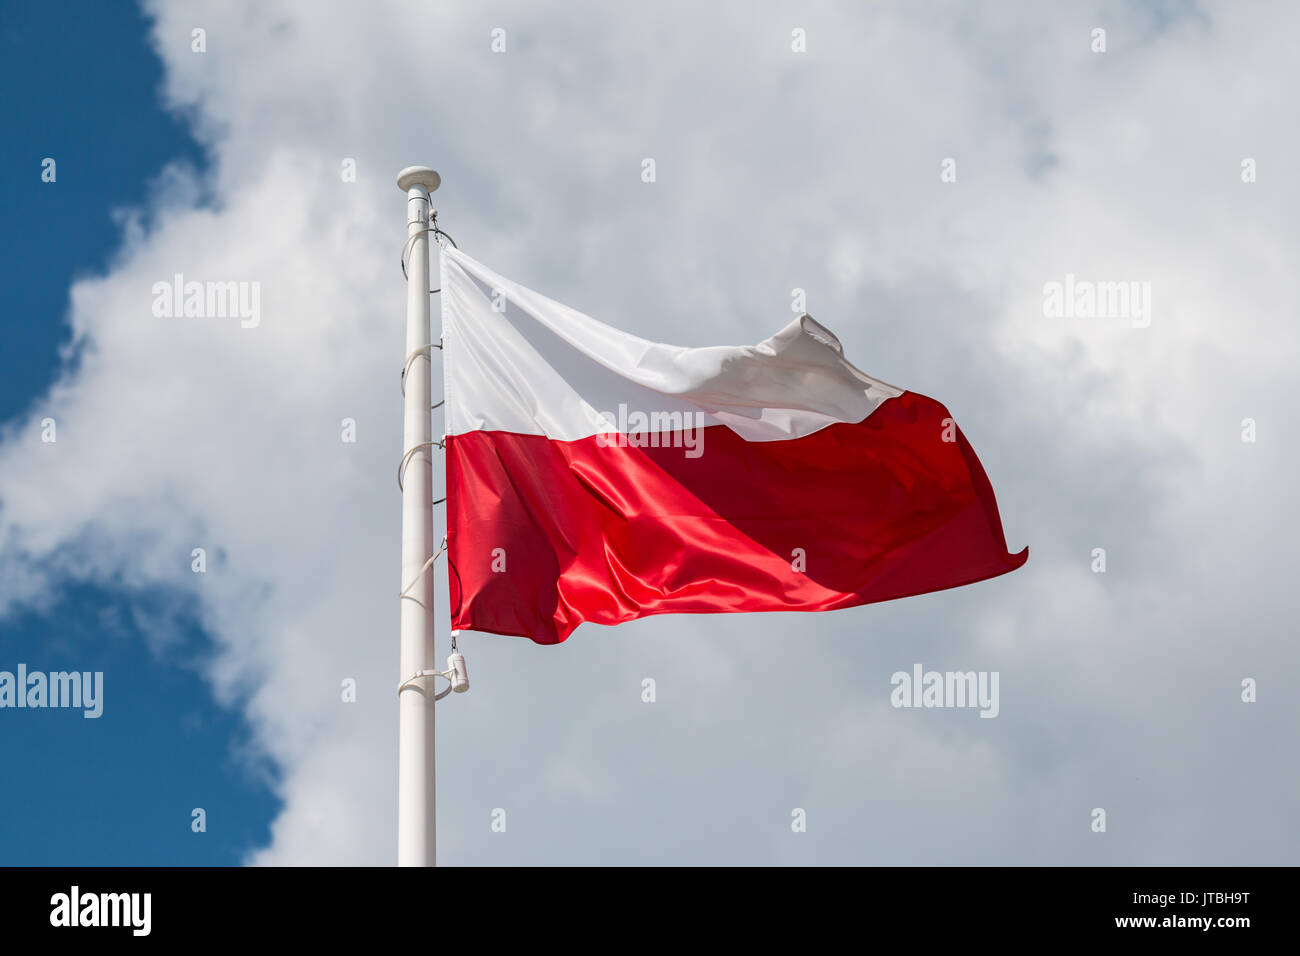 Brandissant le drapeau national de la Pologne sur un mât, couleurs nationales de la Pologne. Banque D'Images